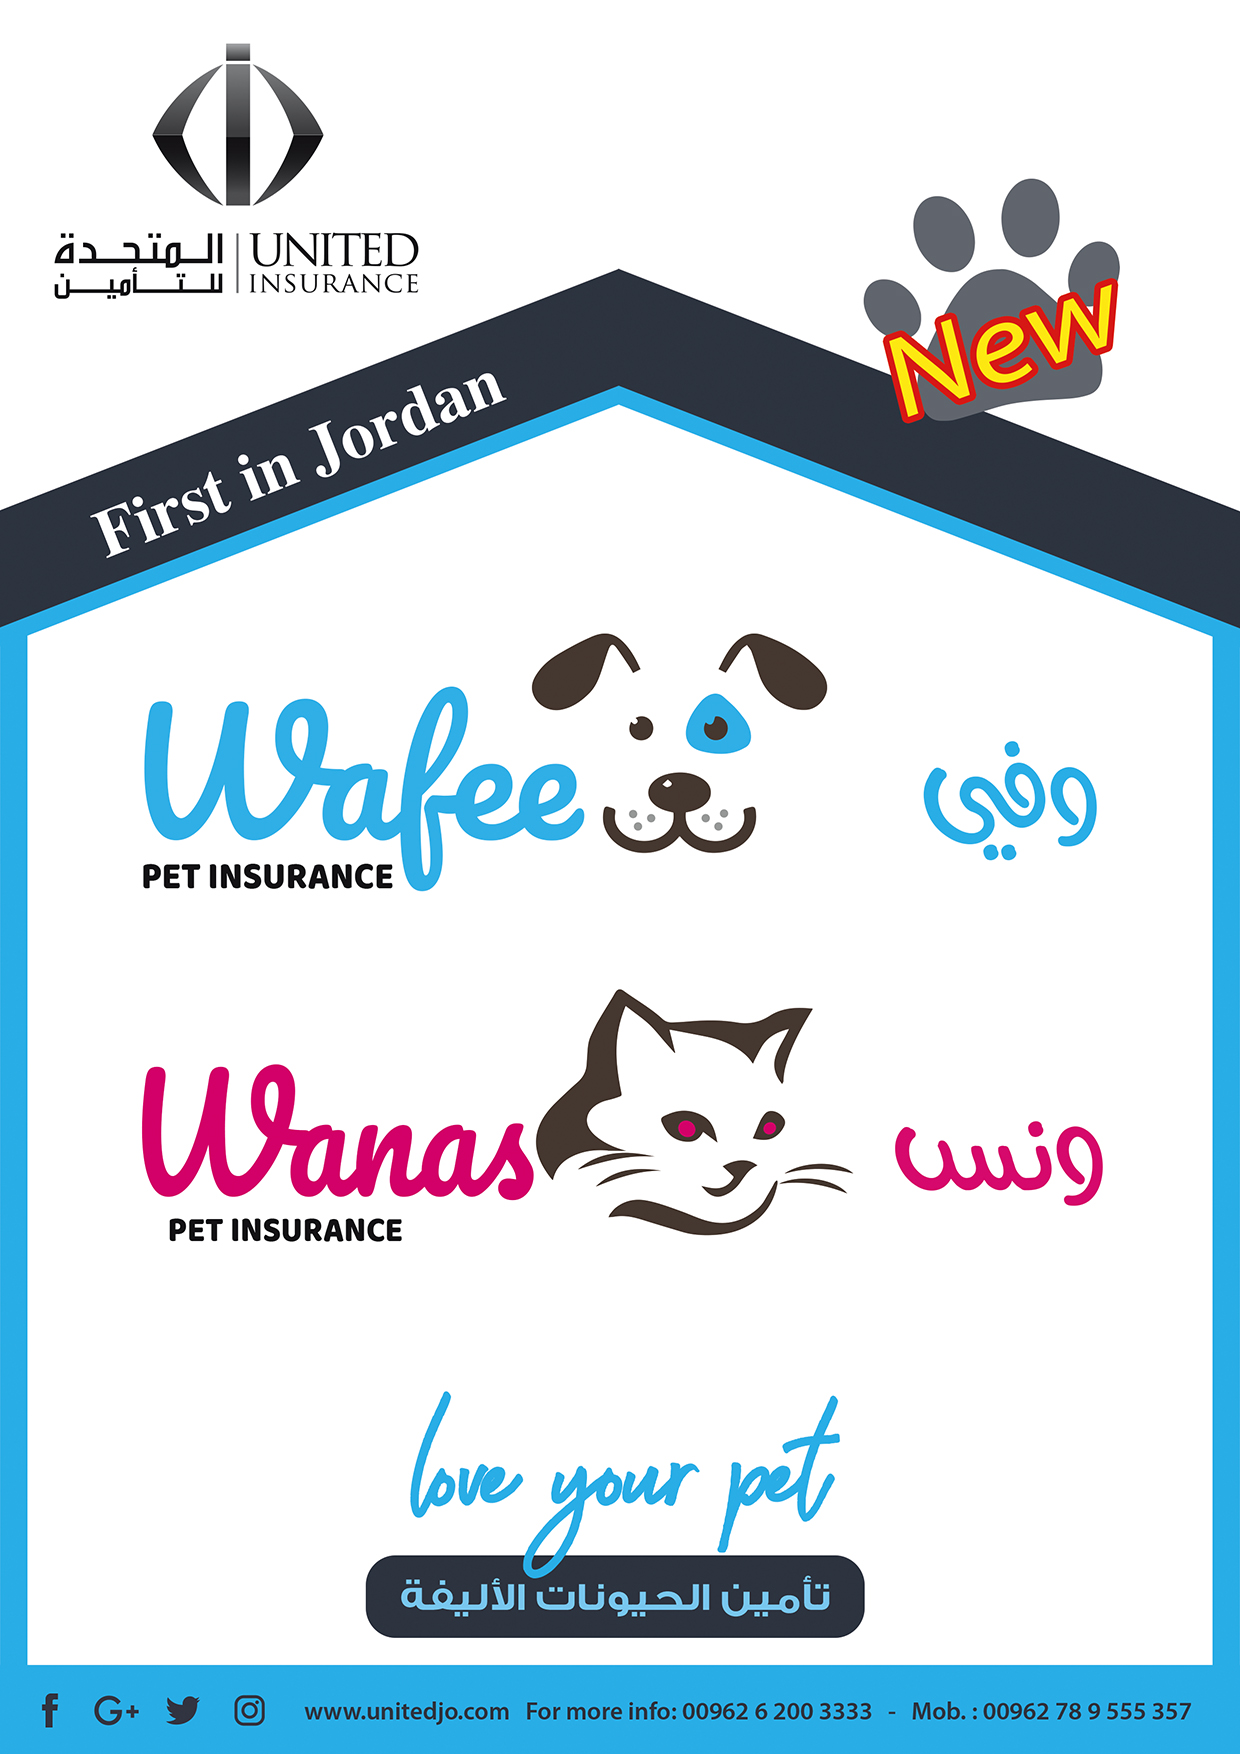 المتحدة للتأمين تطلق برامج تأمين الحيوانات الأليفة لأول مرة بالأردن والمنطقة